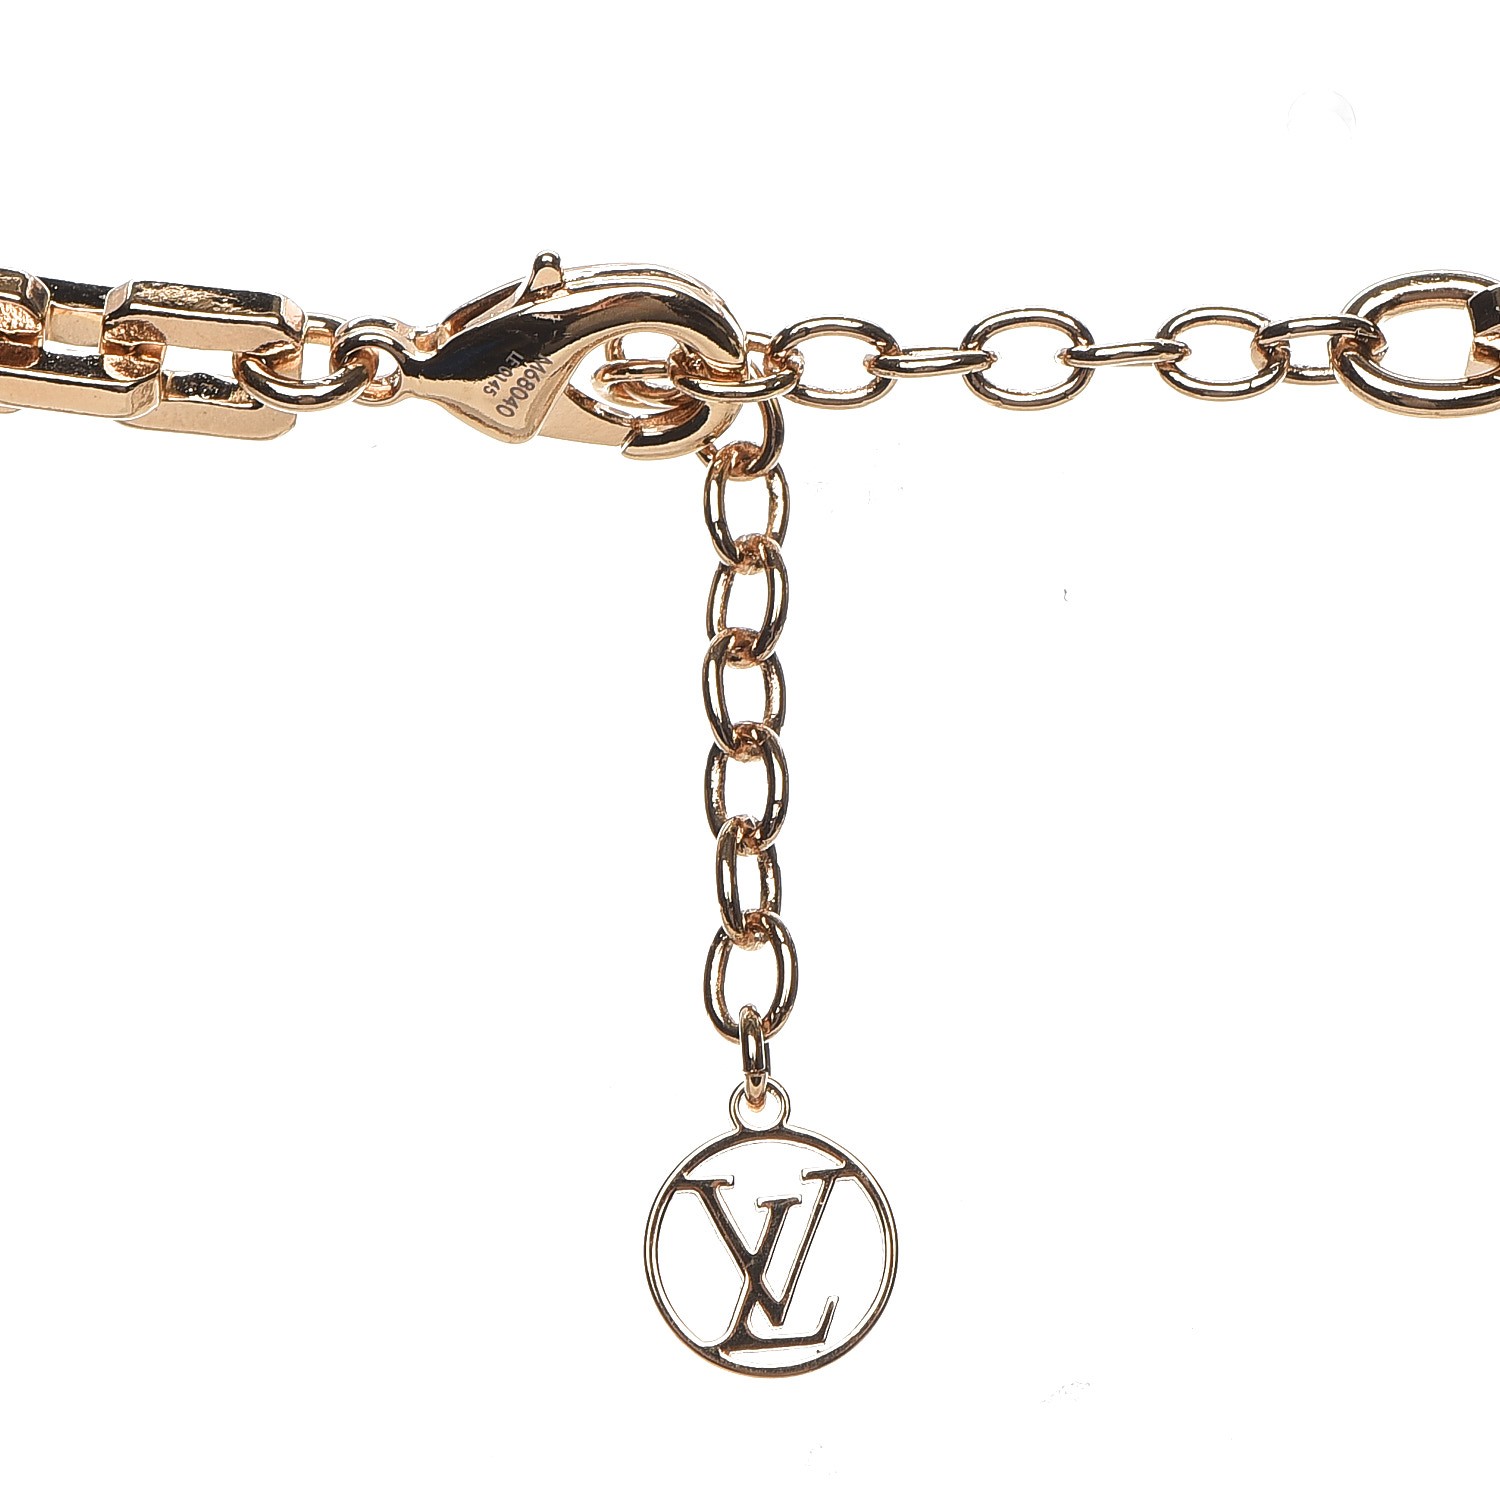 Unboxing & Review the Louis Vuitton Nanogram Necklace (M63141